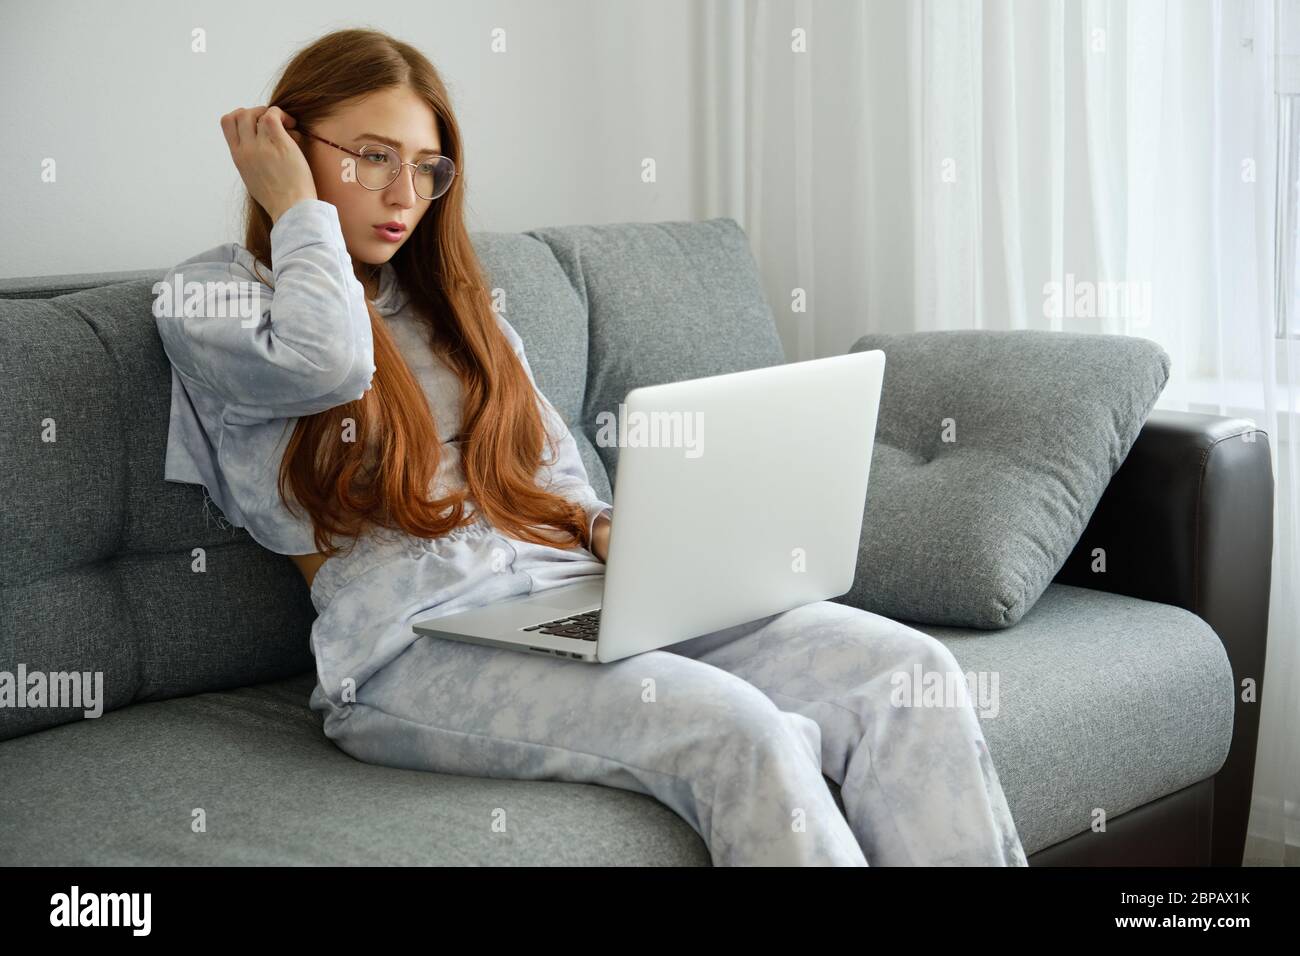 Ragazza rossa in pigiami e bicchieri si siede su un divano con un computer portatile, raddrizzando i capelli Foto Stock